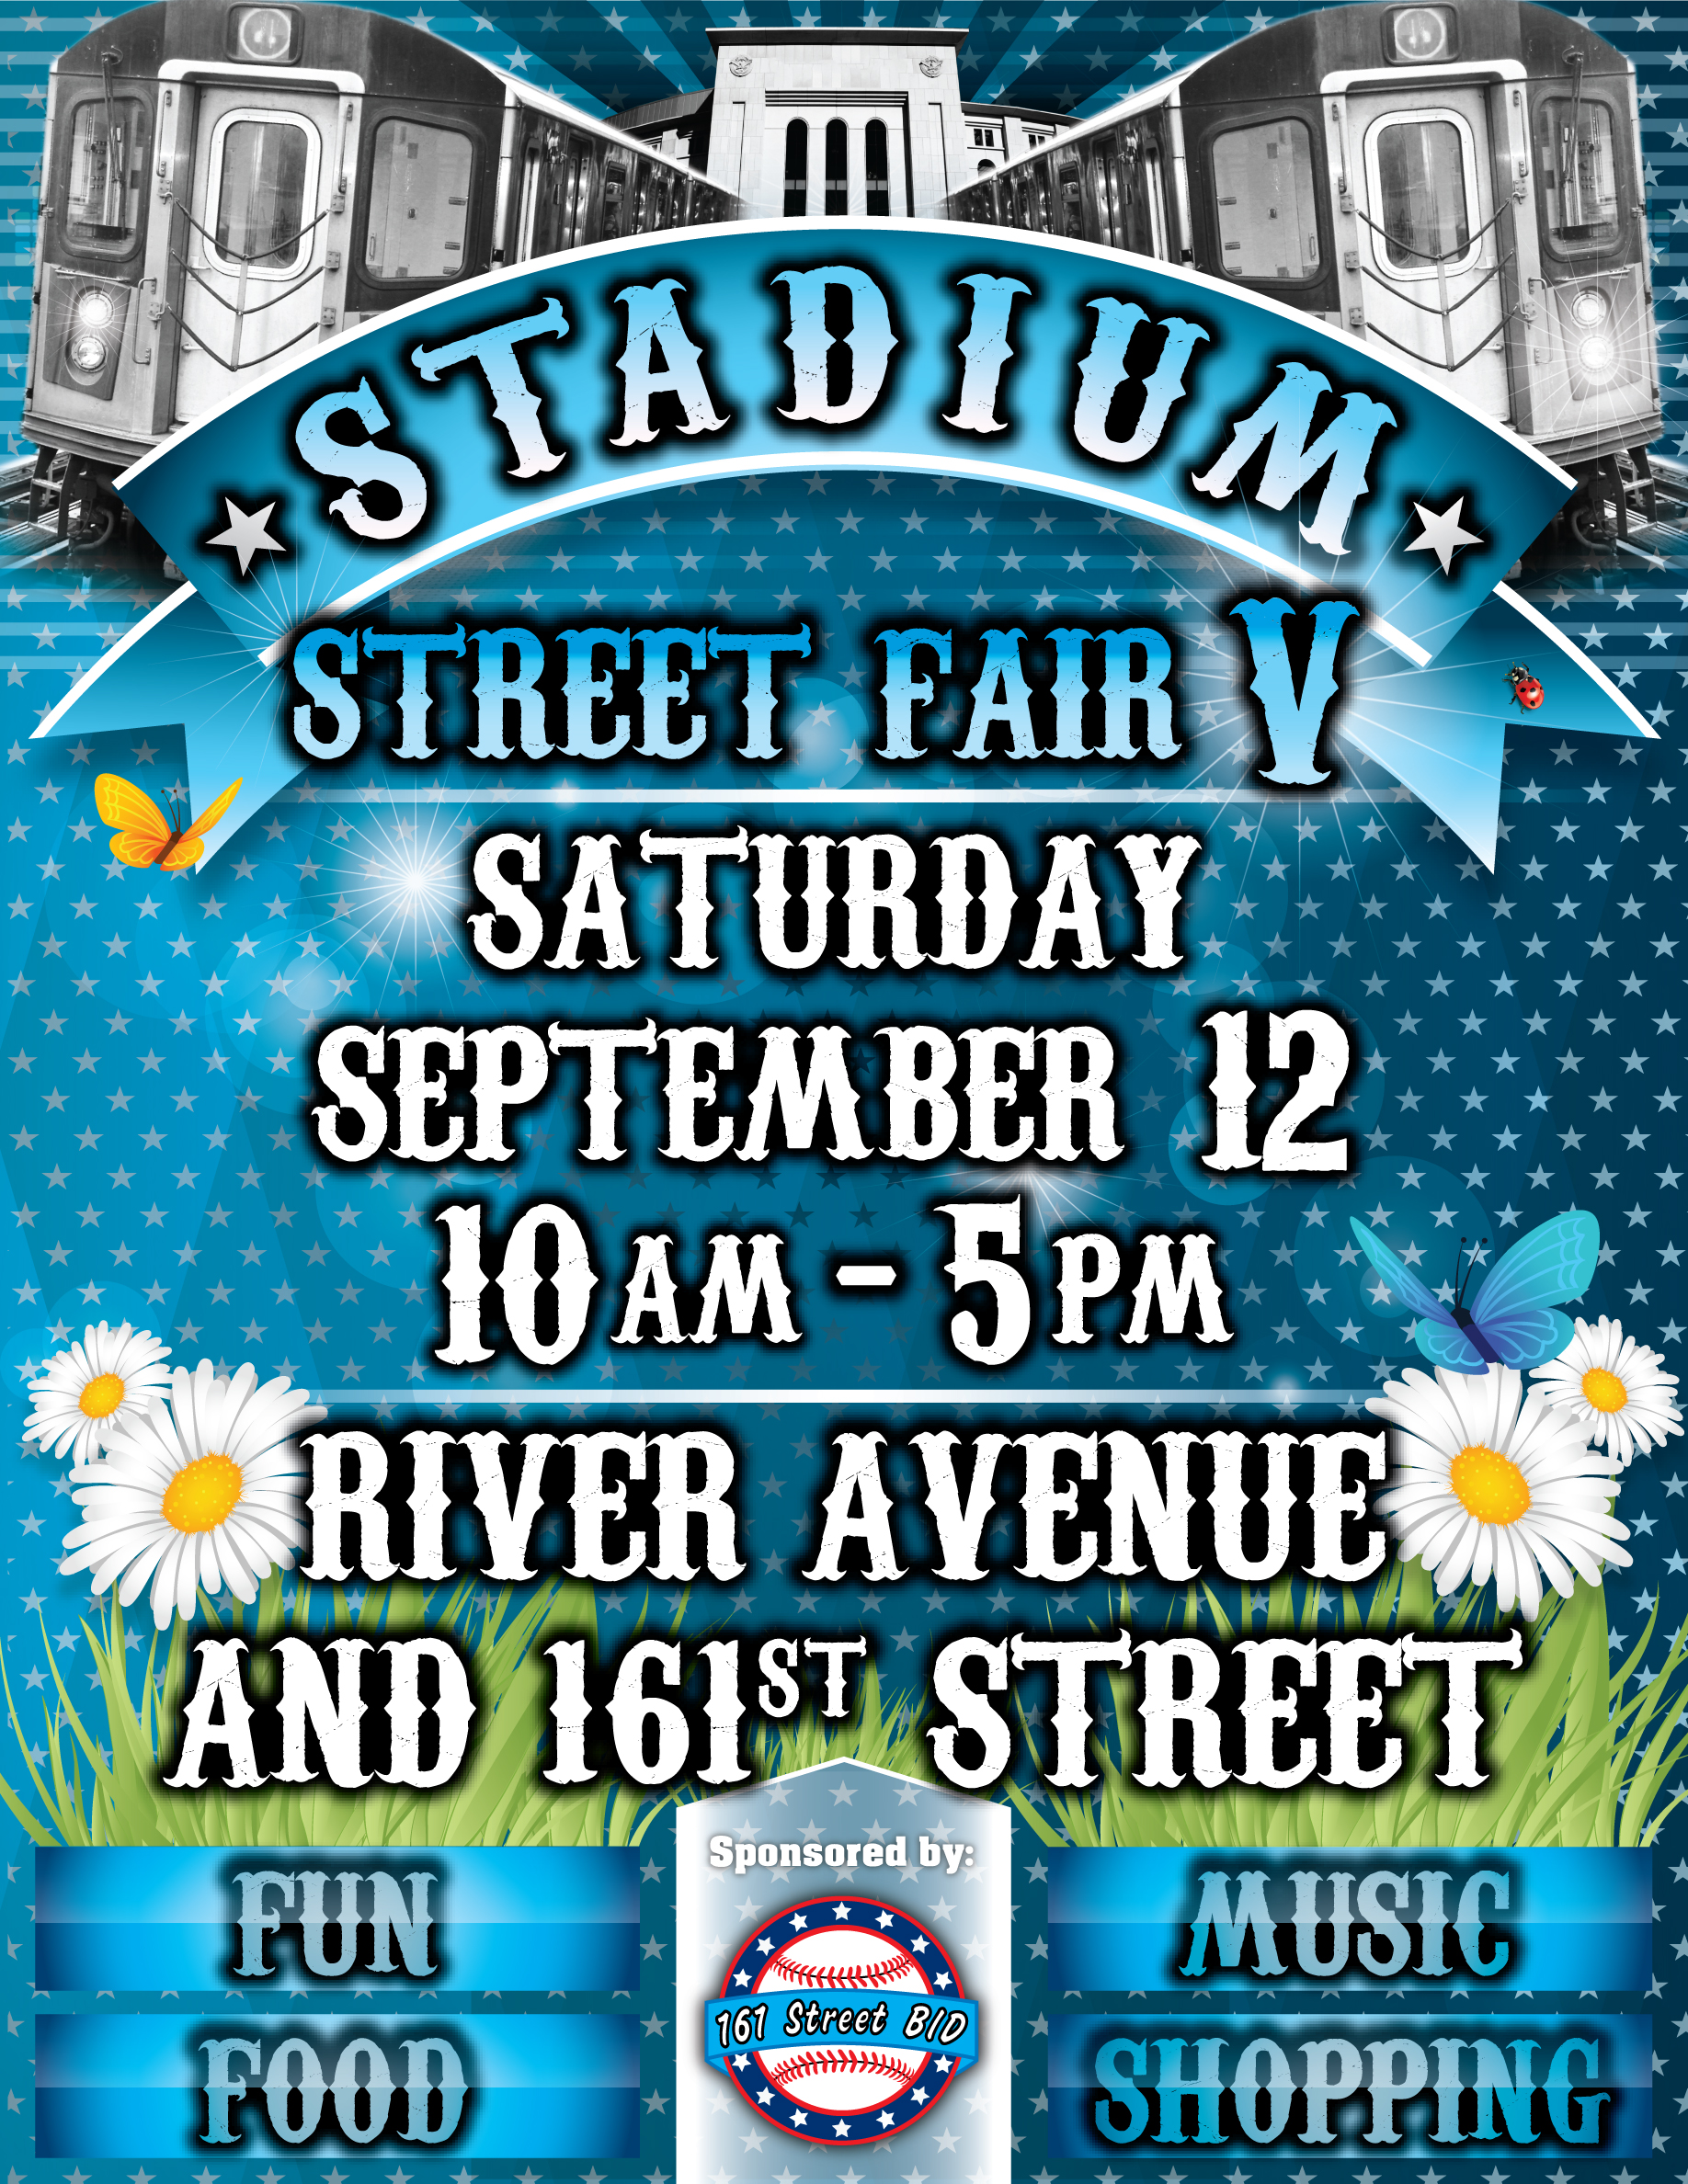 Stadium Street Fair V flier